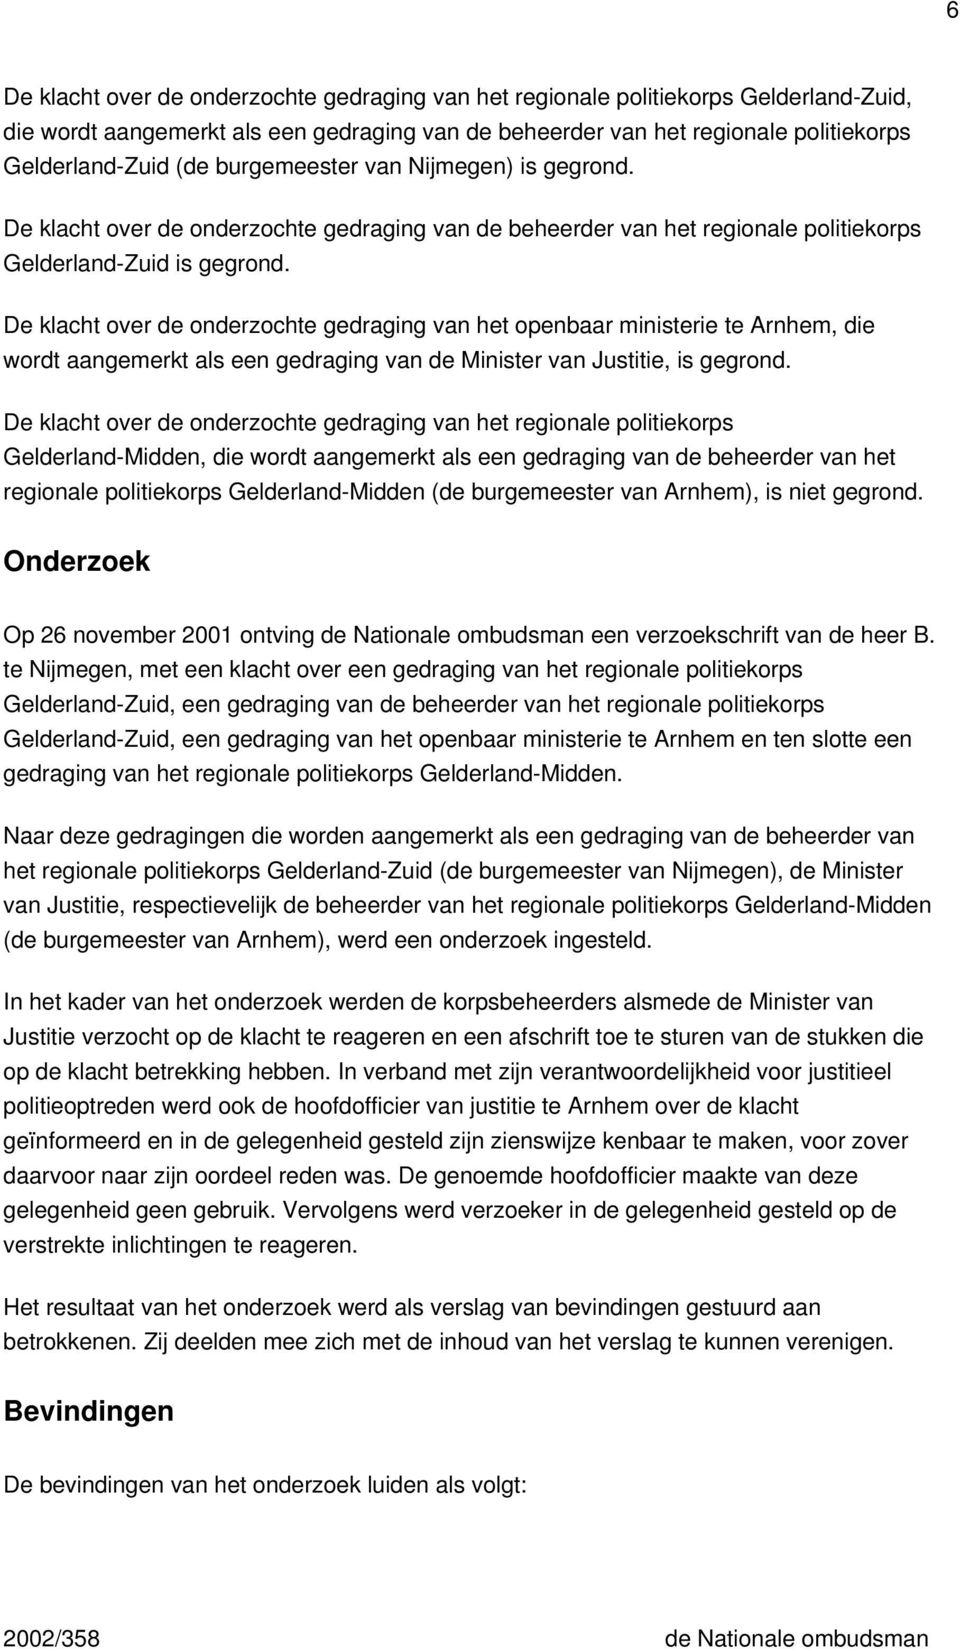 De klacht over de onderzochte gedraging van het openbaar ministerie te Arnhem, die wordt aangemerkt als een gedraging van de Minister van Justitie, is gegrond.